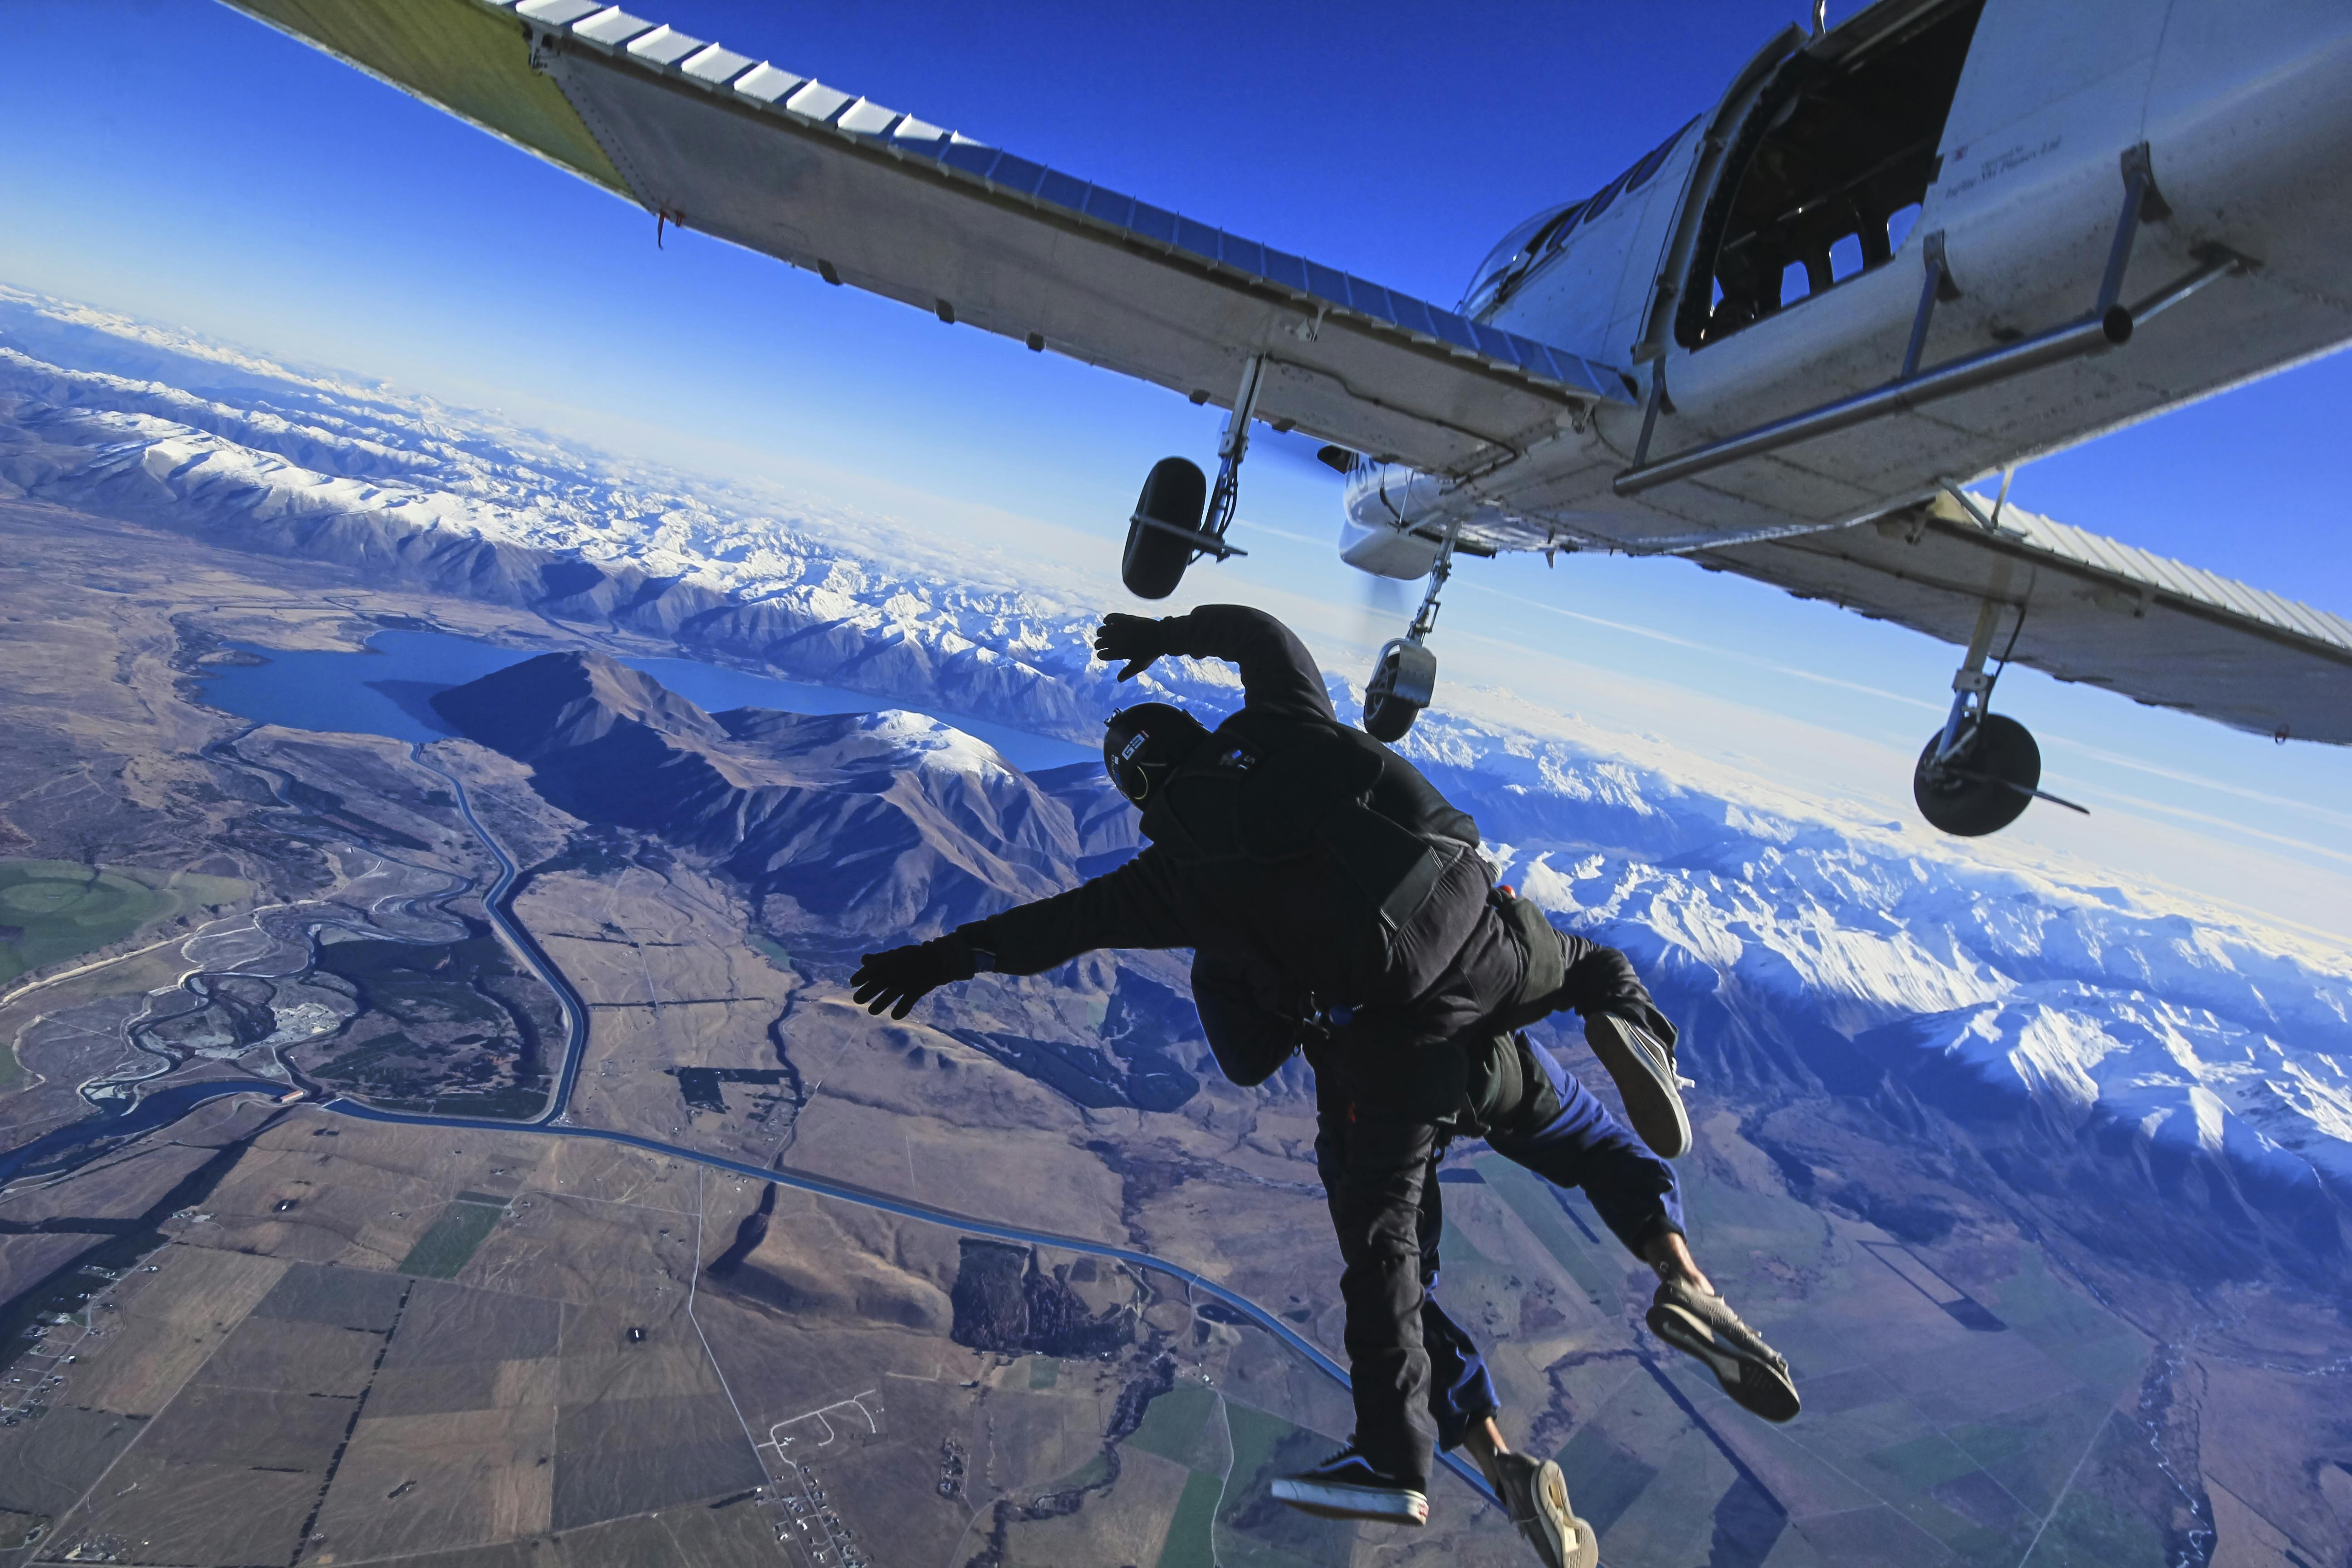 Skok spadochronowy w tandemie na wysokość 3000 metrów nad Mount Cook